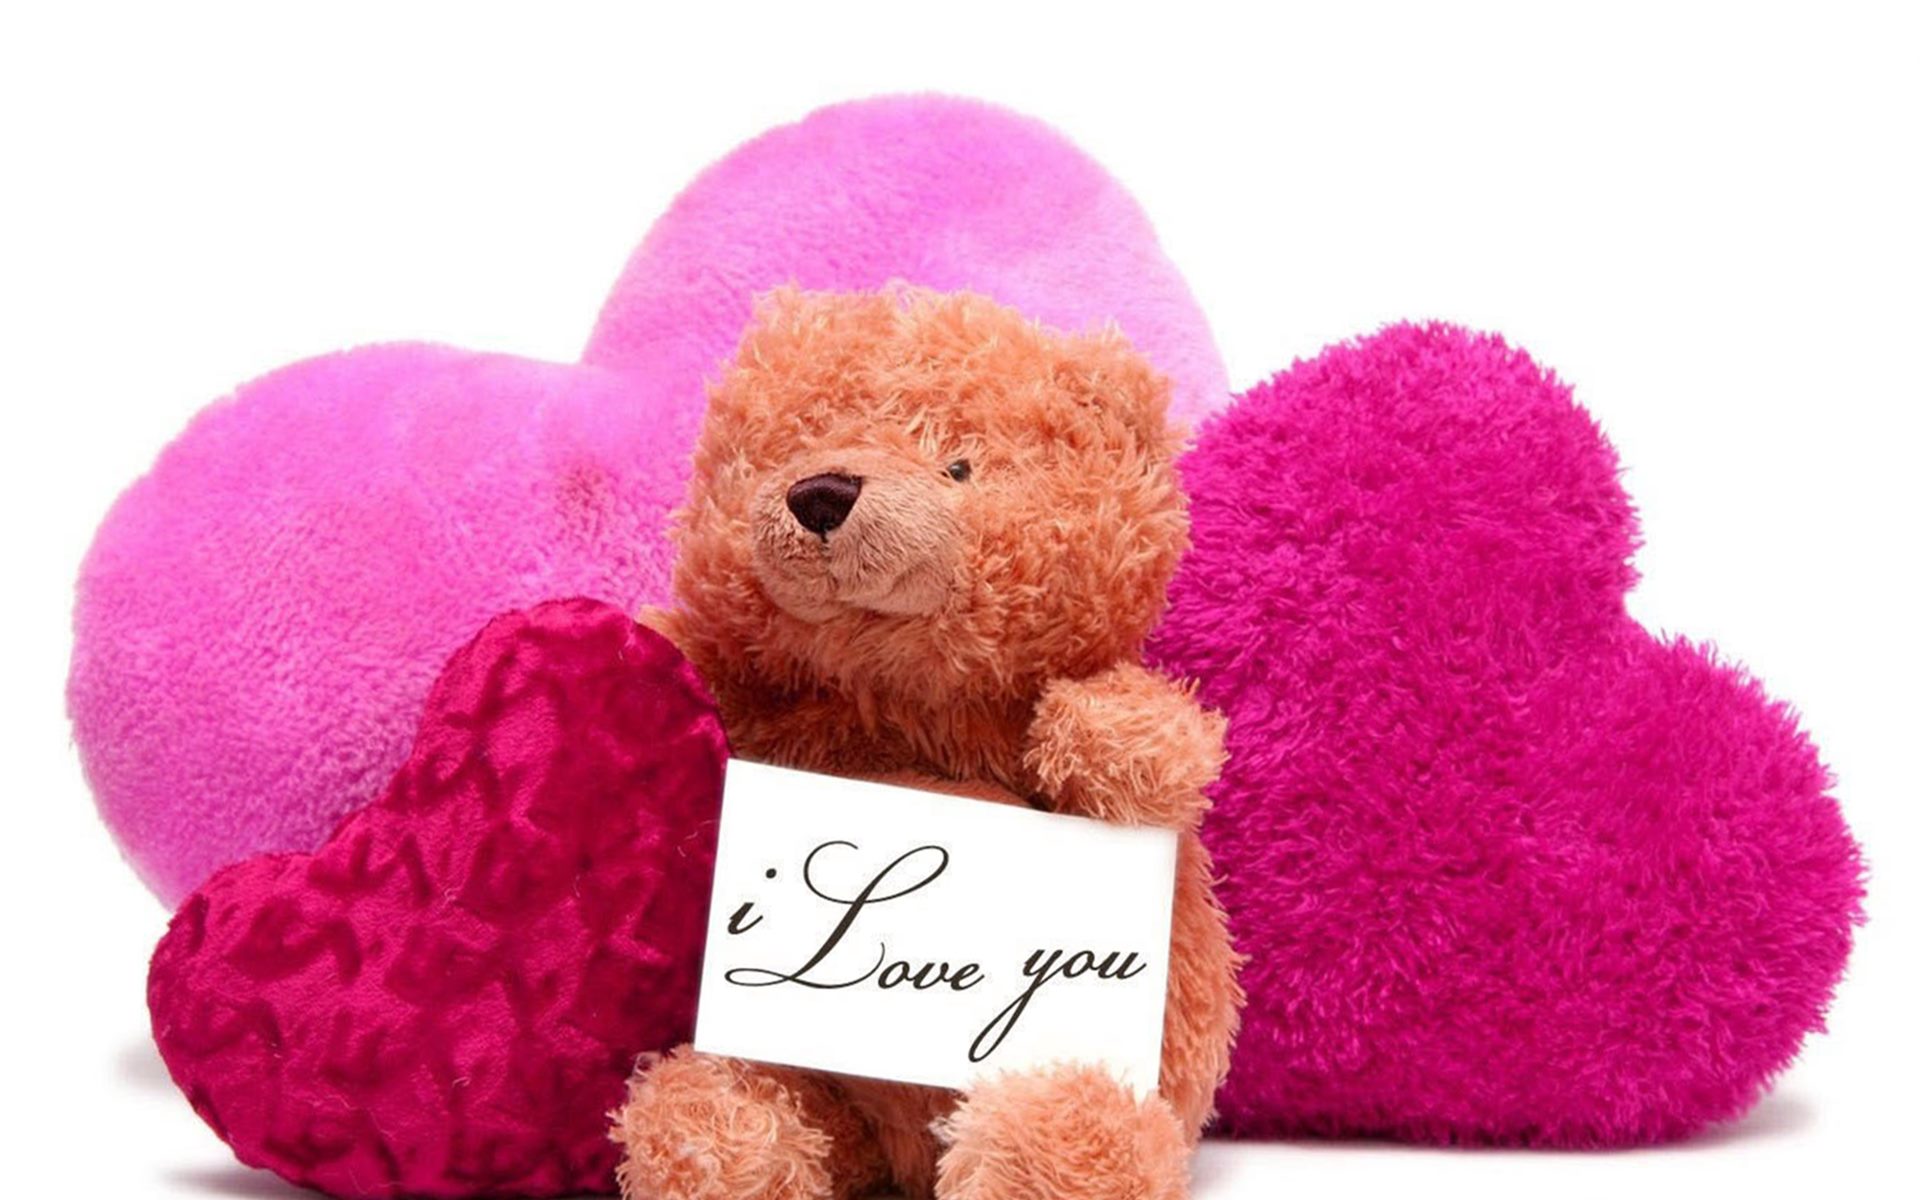 Love Happy Teddy Day - HD Wallpaper 